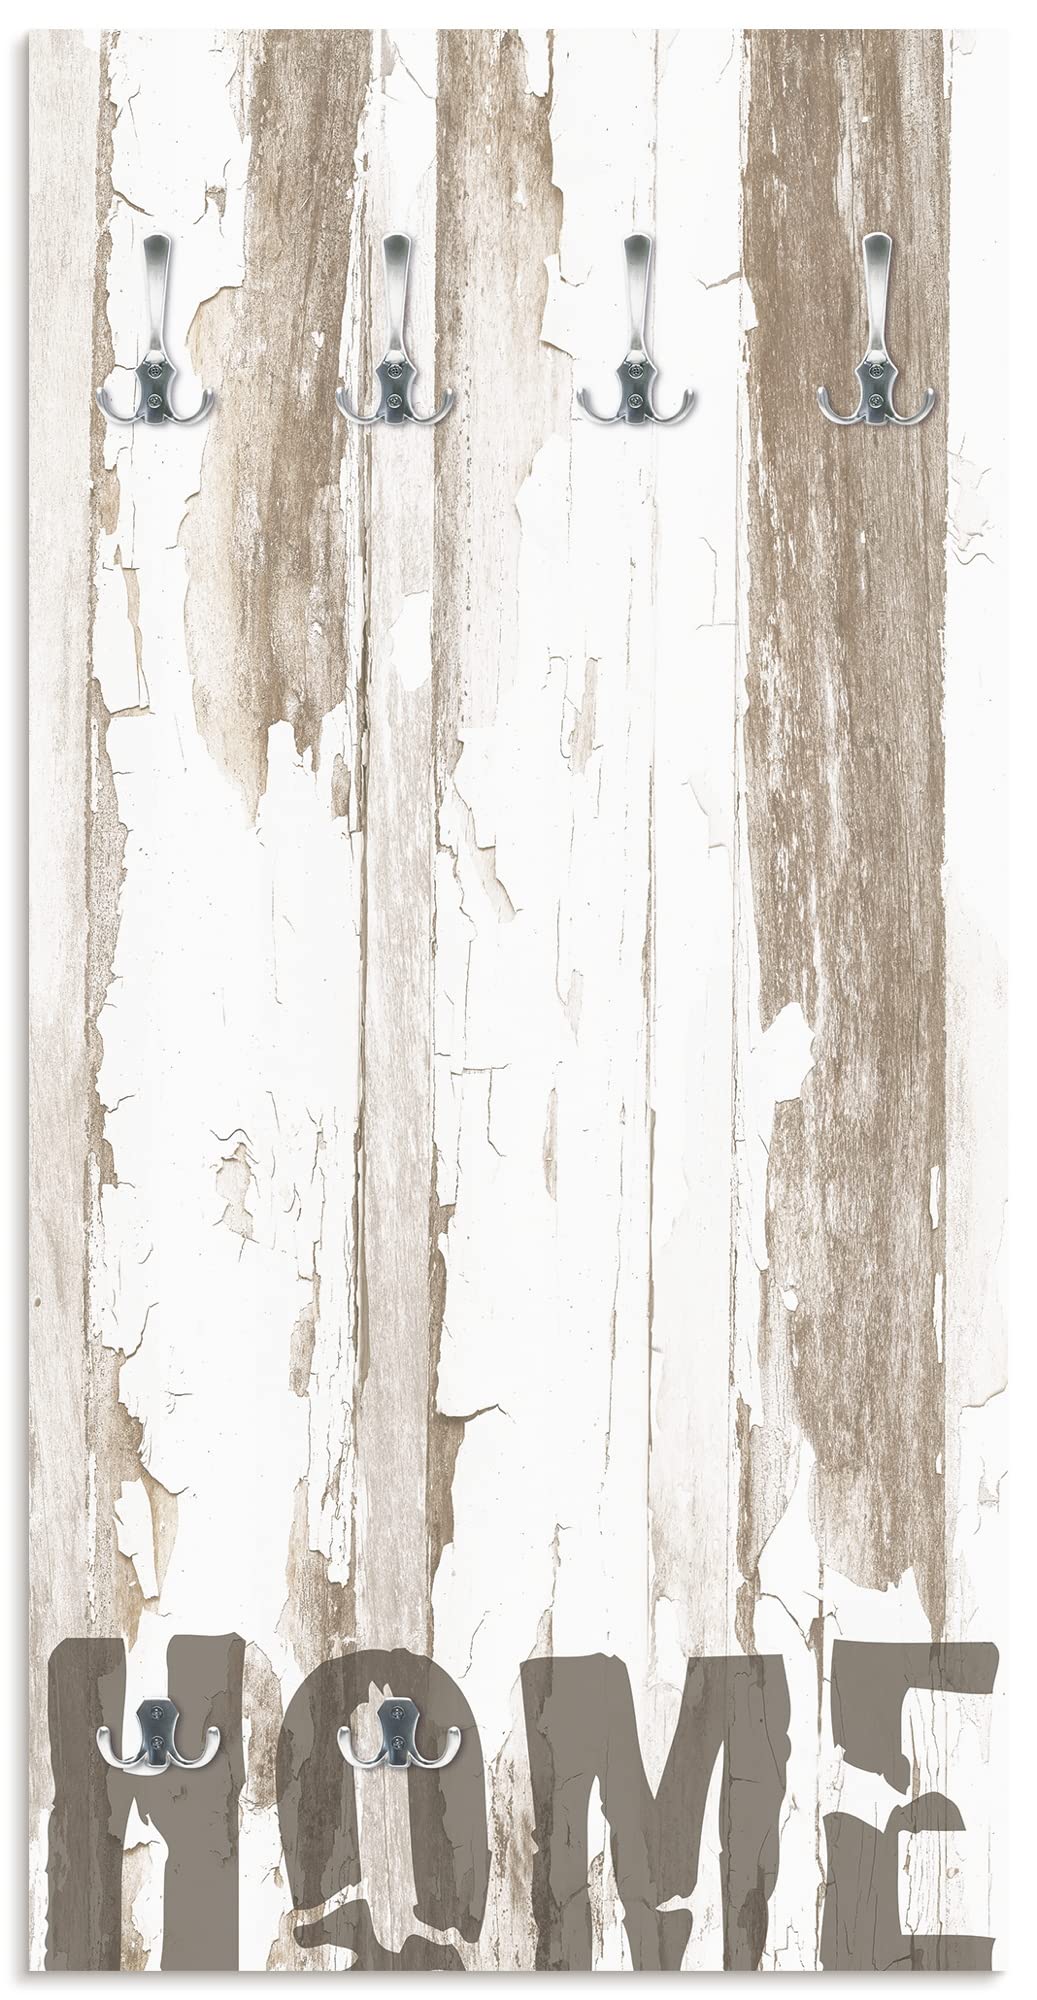 ARTLAND Wandgarderobe Holz mit 6 Haken 60x120 cm Design Garderobe mit Motiv Landhausstil Zuhause Home T9ID